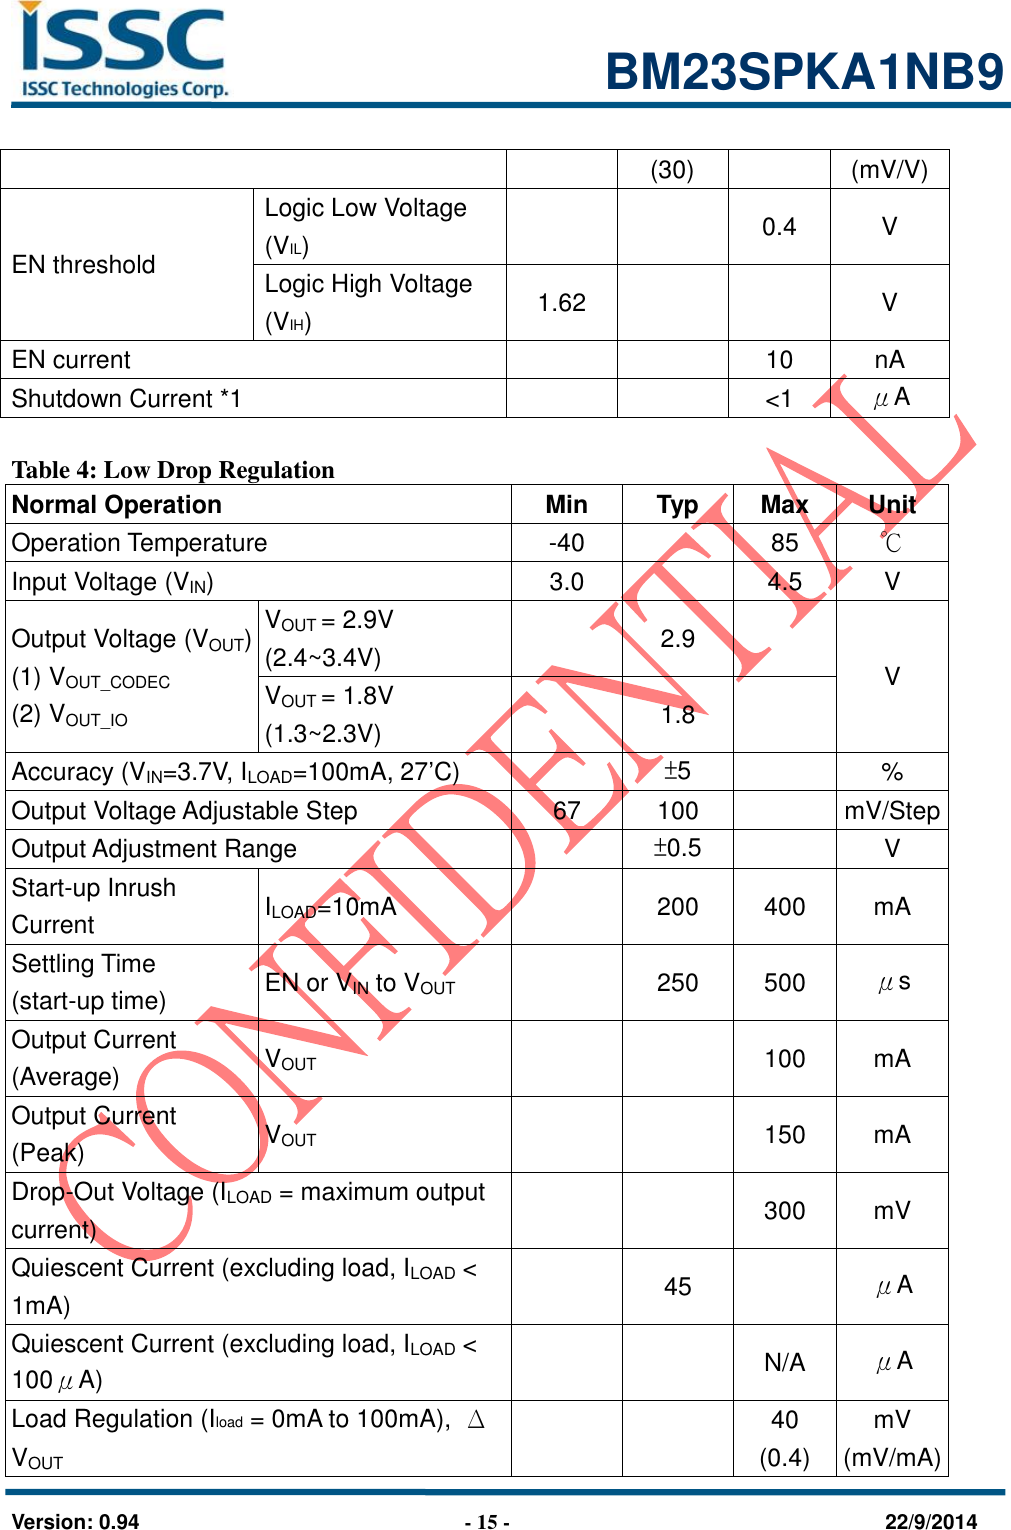                                                            BM23SPKA1NB9   Version: 0.94                              - 15 -                                    22/9/2014 (30) (mV/V) EN threshold Logic Low Voltage (VIL)   0.4 V Logic High Voltage (VIH) 1.62   V EN current   10 nA Shutdown Current *1   &lt;1 μA  Table 4: Low Drop Regulation Normal Operation Min Typ Max Unit Operation Temperature -40  85 ℃ Input Voltage (VIN) 3.0  4.5 V Output Voltage (VOUT) (1) VOUT_CODEC (2) VOUT_IO     VOUT = 2.9V (2.4~3.4V)  2.9         V VOUT = 1.8V (1.3~2.3V)  1.8  Accuracy (VIN=3.7V, ILOAD=100mA, 27’C)  ±5  % Output Voltage Adjustable Step 67 100  mV/Step Output Adjustment Range  ±0.5  V Start-up Inrush Current ILOAD=10mA  200 400 mA Settling Time   (start-up time) EN or VIN to VOUT  250 500 μs Output Current (Average) VOUT   100 mA Output Current (Peak) VOUT   150 mA Drop-Out Voltage (ILOAD = maximum output current)   300 mV Quiescent Current (excluding load, ILOAD &lt; 1mA)  45  μA Quiescent Current (excluding load, ILOAD &lt; 100μA)   N/A μA Load Regulation (Iload = 0mA to 100mA), ΔVOUT   40 (0.4) mV (mV/mA) 